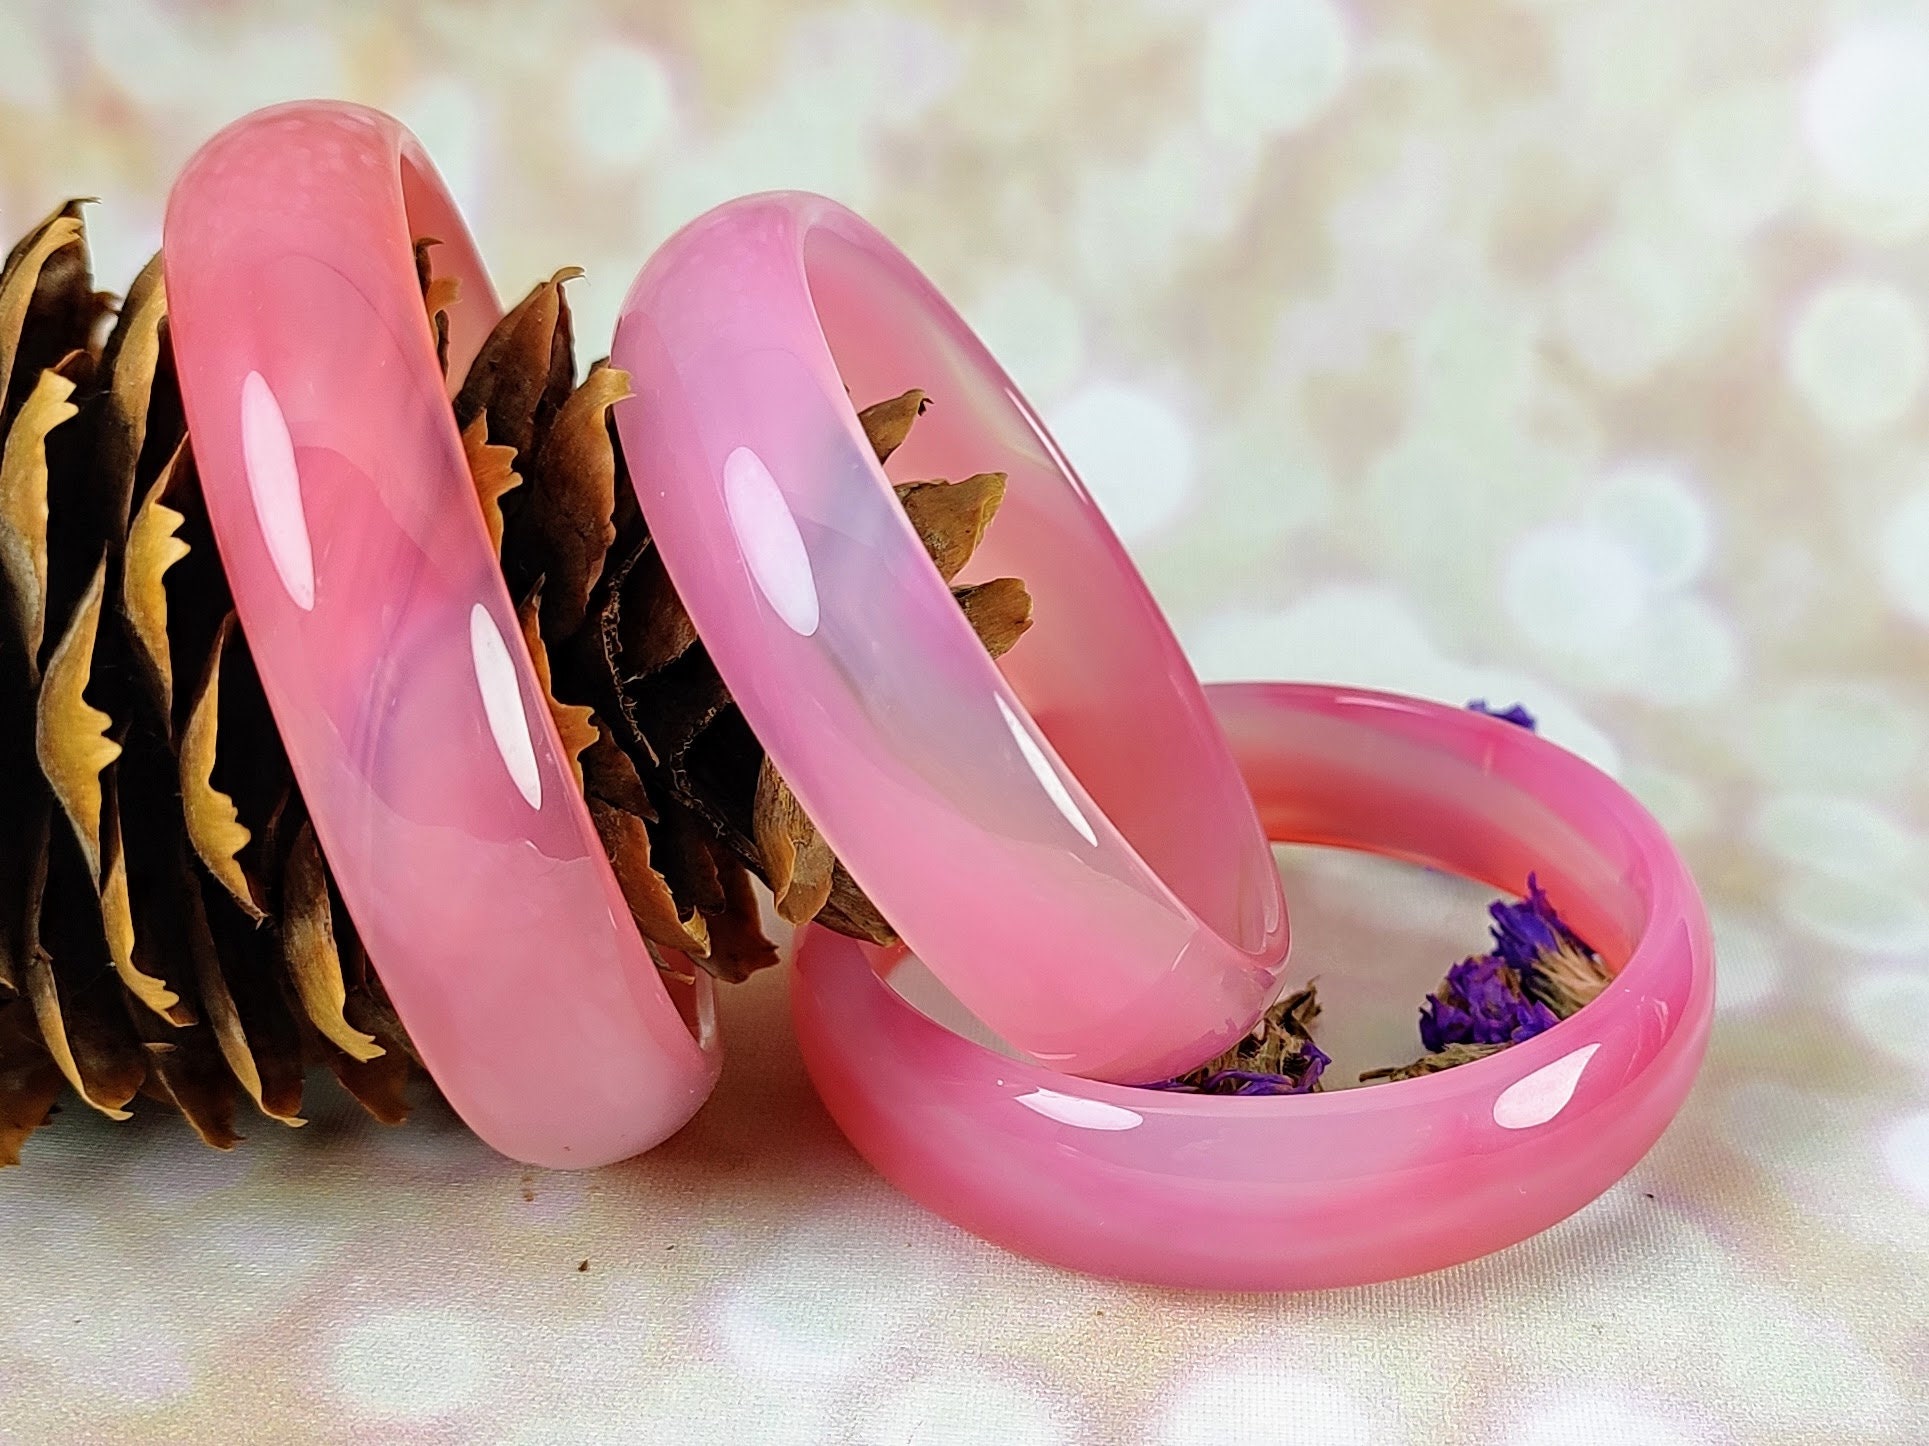 Pink Enamel Veda Bangle Bracelets - Set of 6